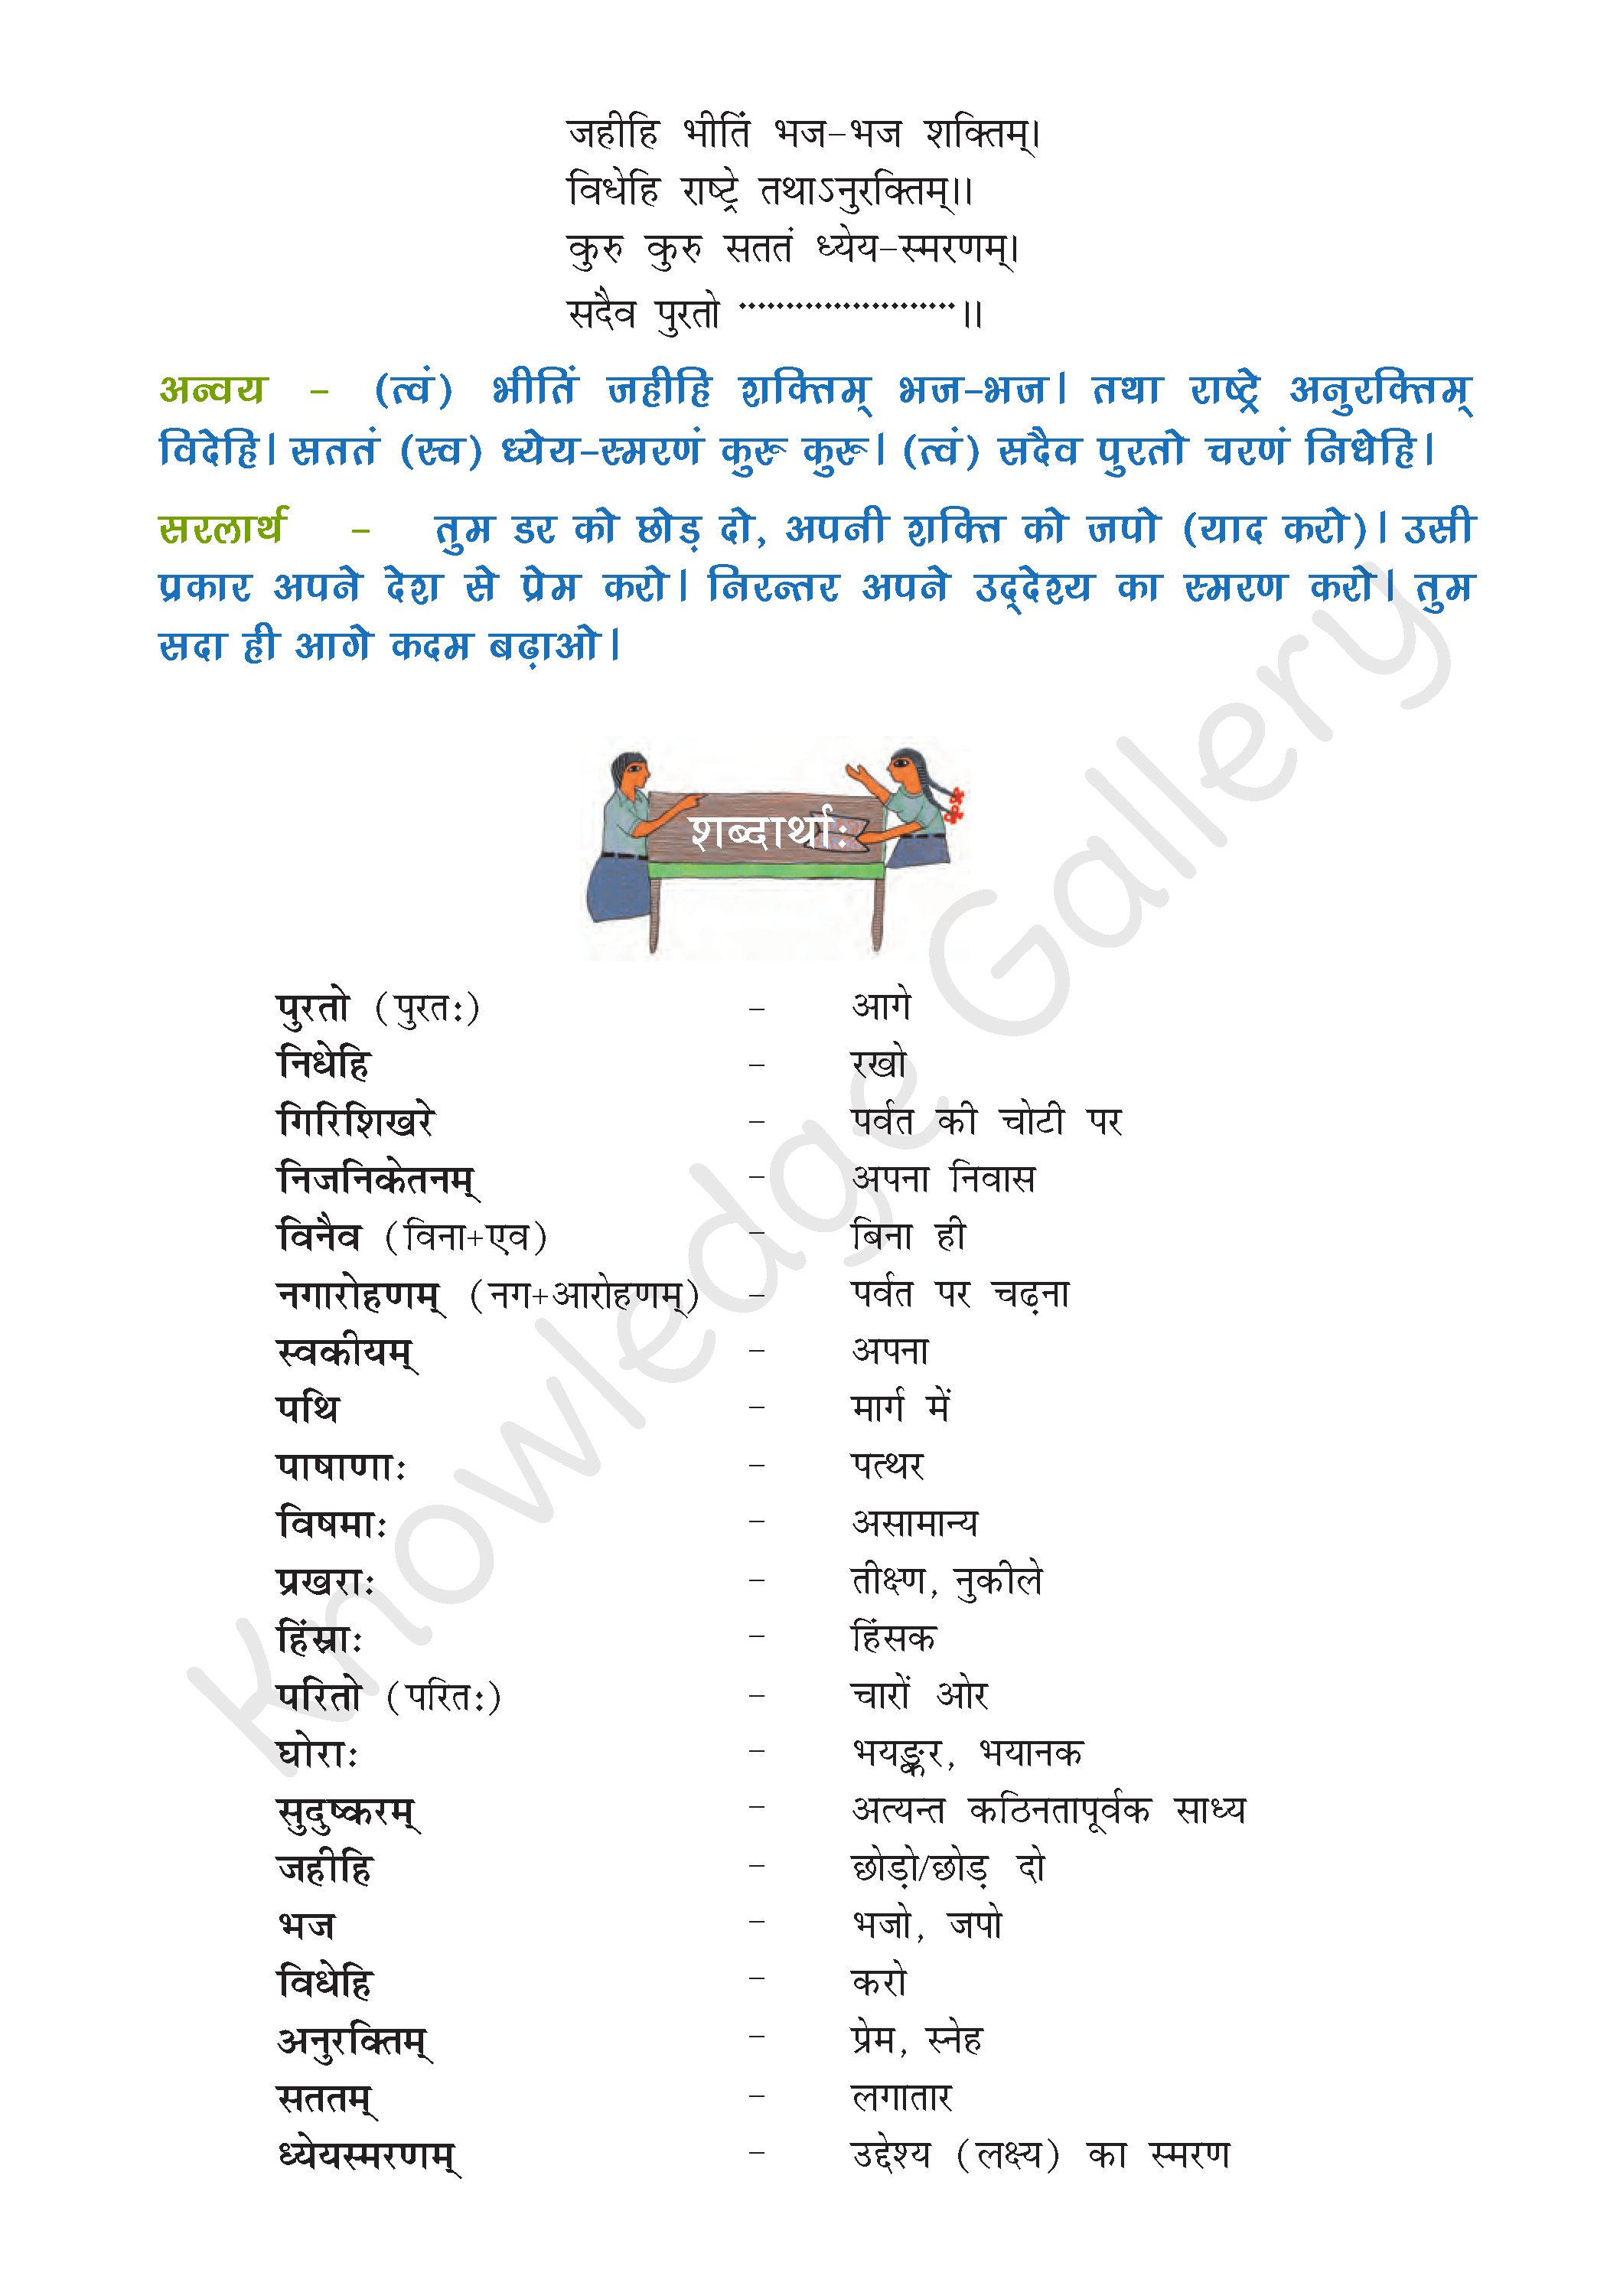 NCERT Solution For Class 8 Sanskrit Chapter 4 part 2